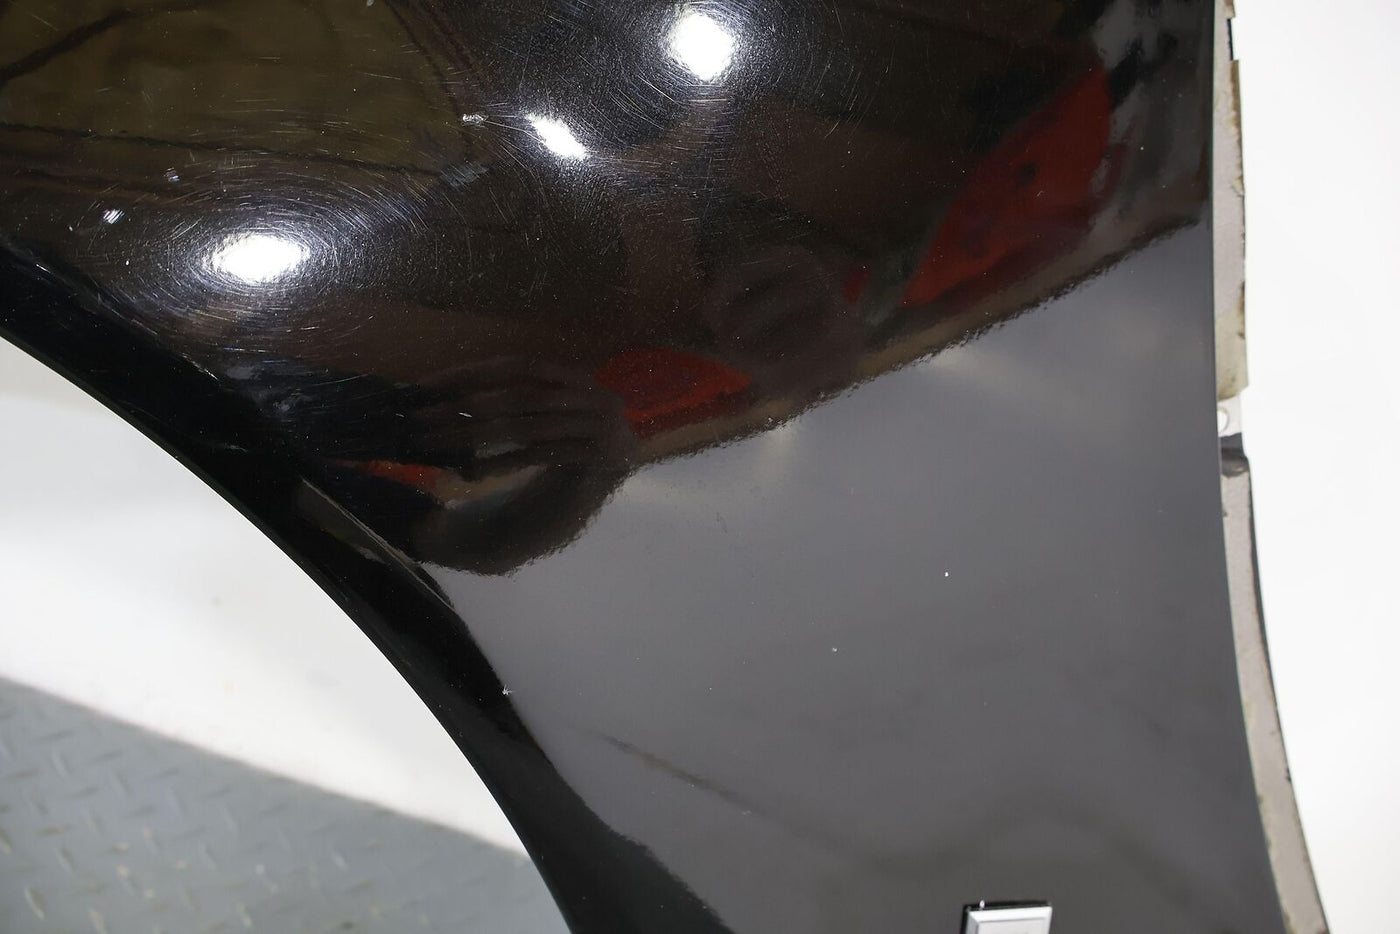 04-09 Cadillac XLR Right RH Rear Quarter Panel Skin (Black Respray)